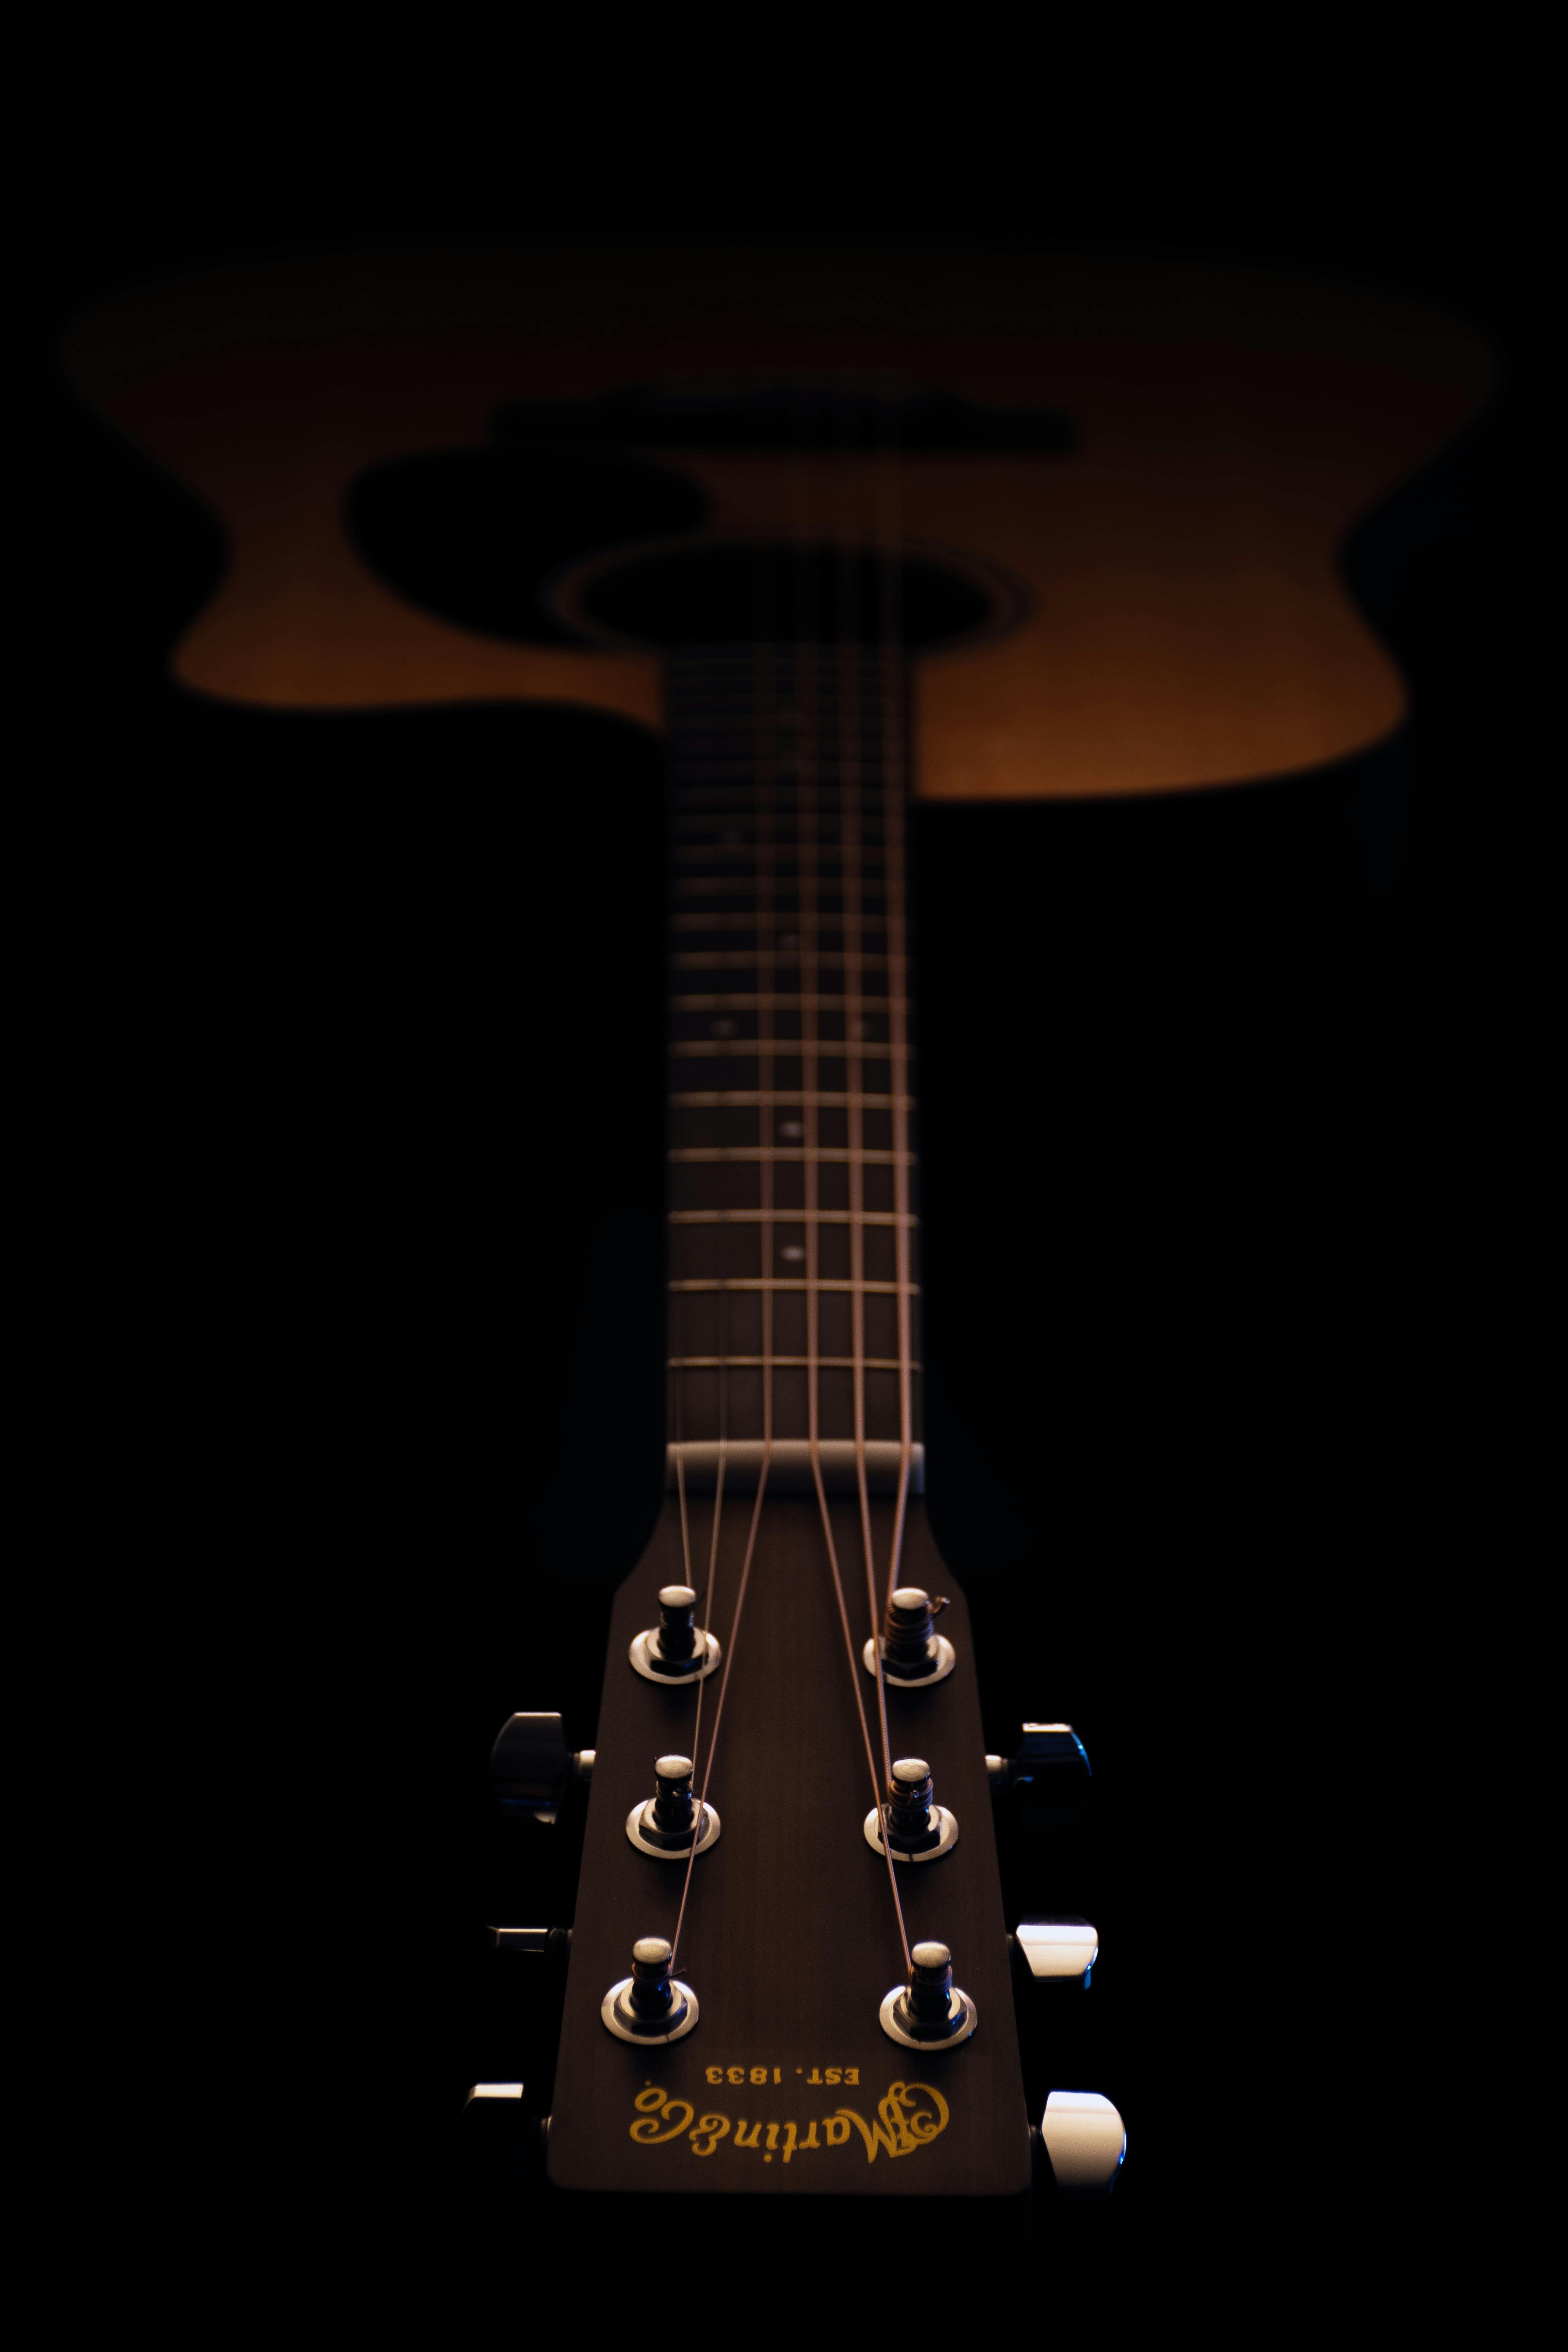 アコースティックギター ギター 弦楽器の無料の写真素材